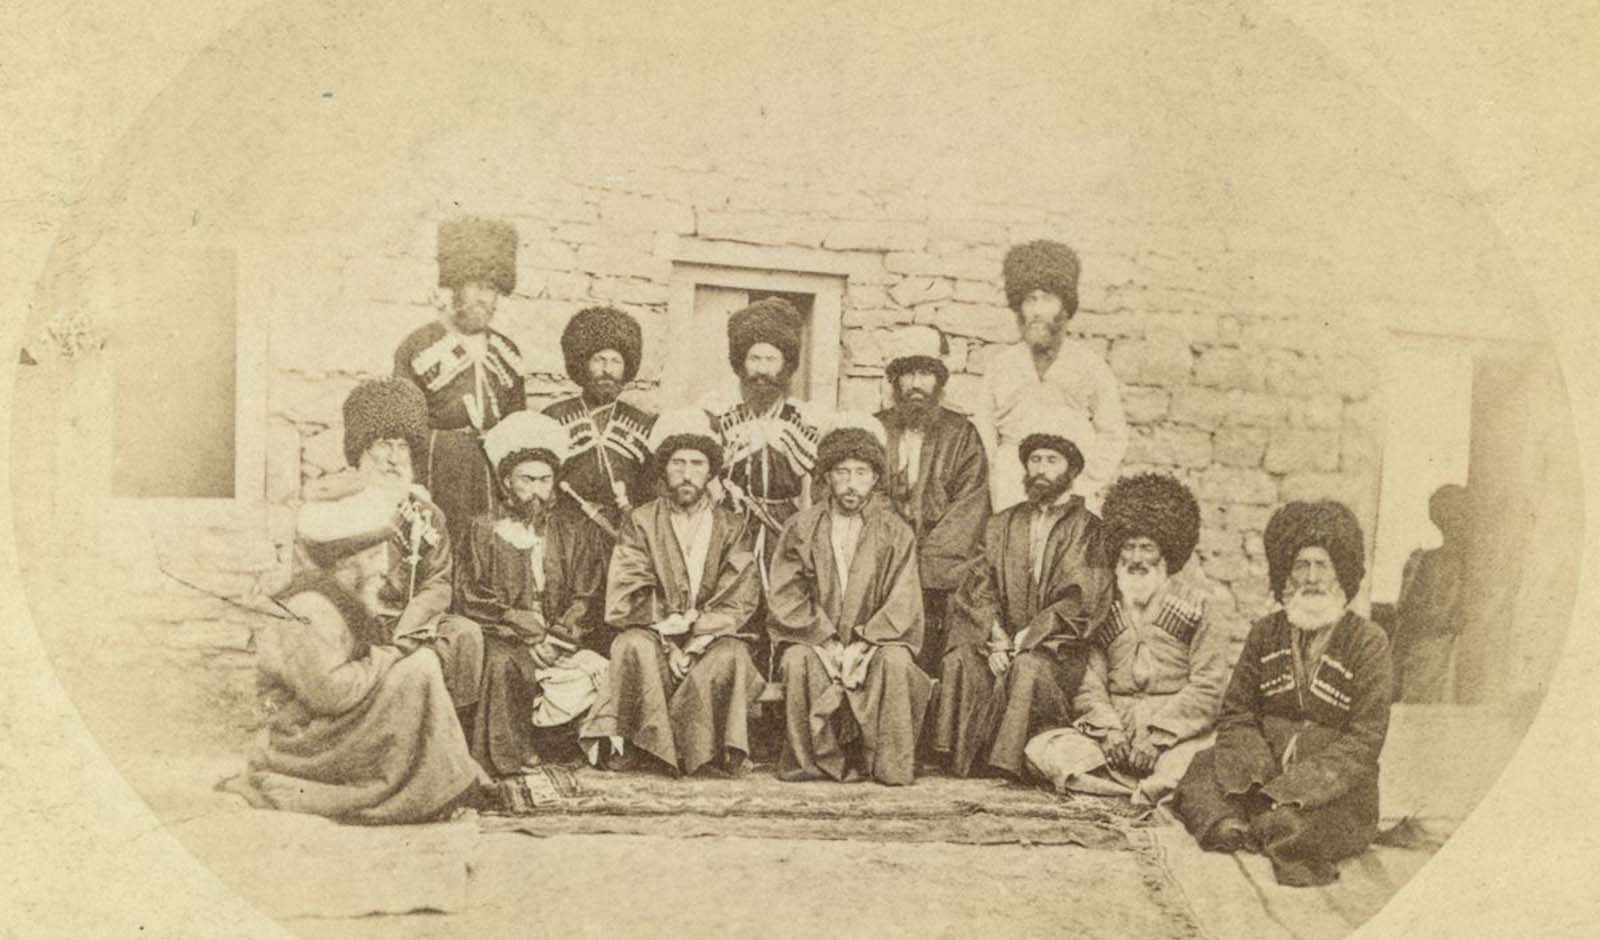 Men from the Transcaucasus region.